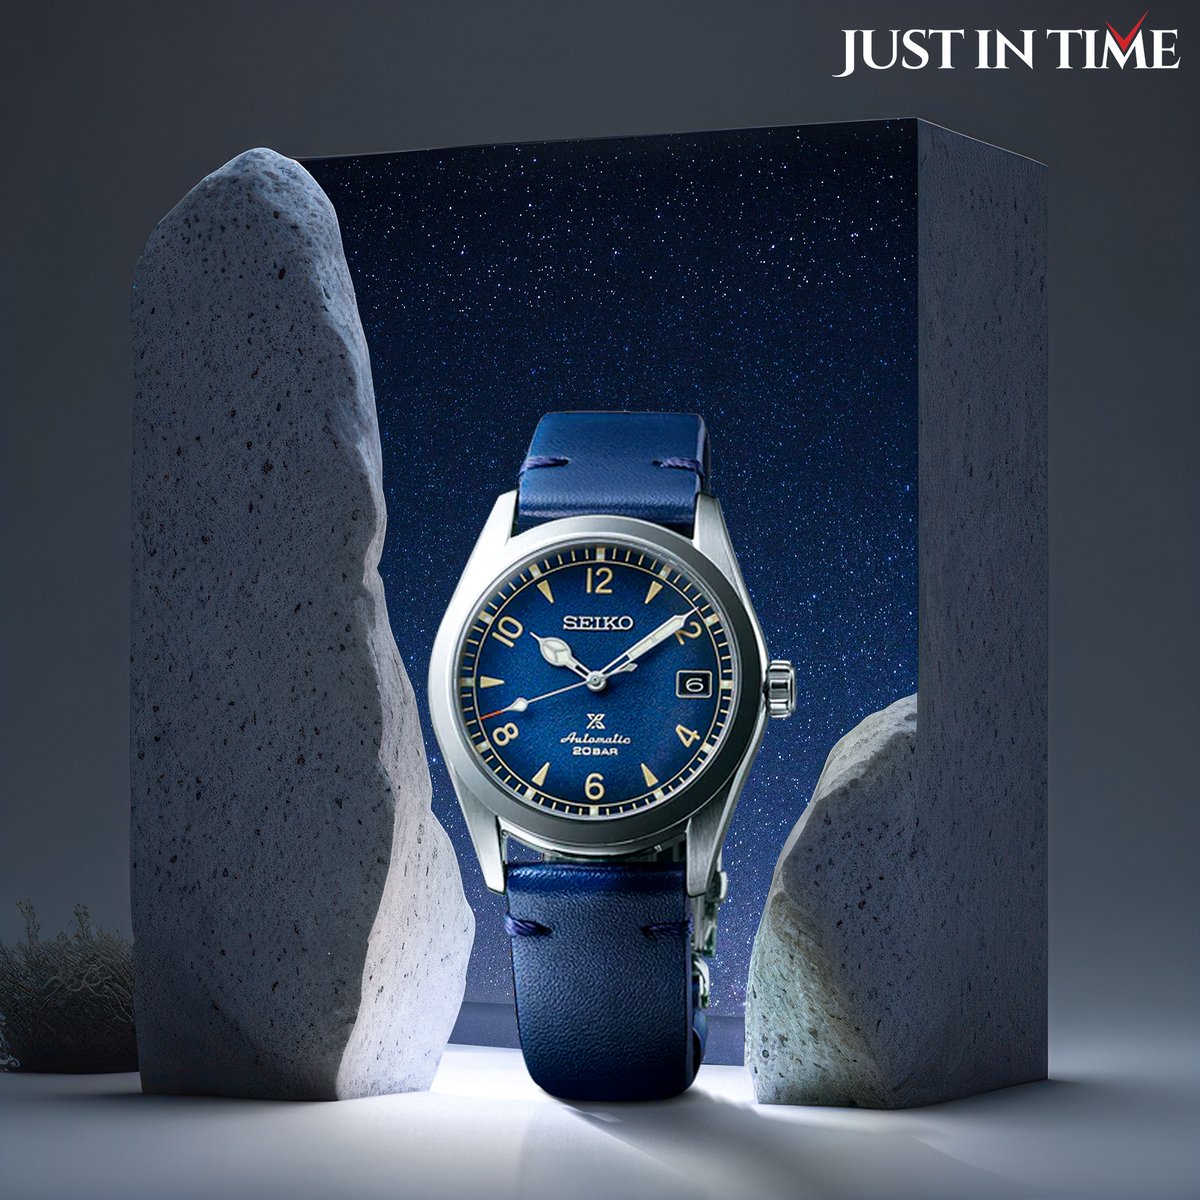 A watch that mirrors the blue skies 🌌

Watch Displayed: Seiko Watch SPB157J1
.
.
.
@seikowatches 
#JustInTime #JustInTimeWatches #Seiko #SeikoWatches #WristWatch #WatchesForMan #WatchCollector #LuxuryWatches #WatchAddict #WatchLover #WatchStore #WatchFam #MensFashion